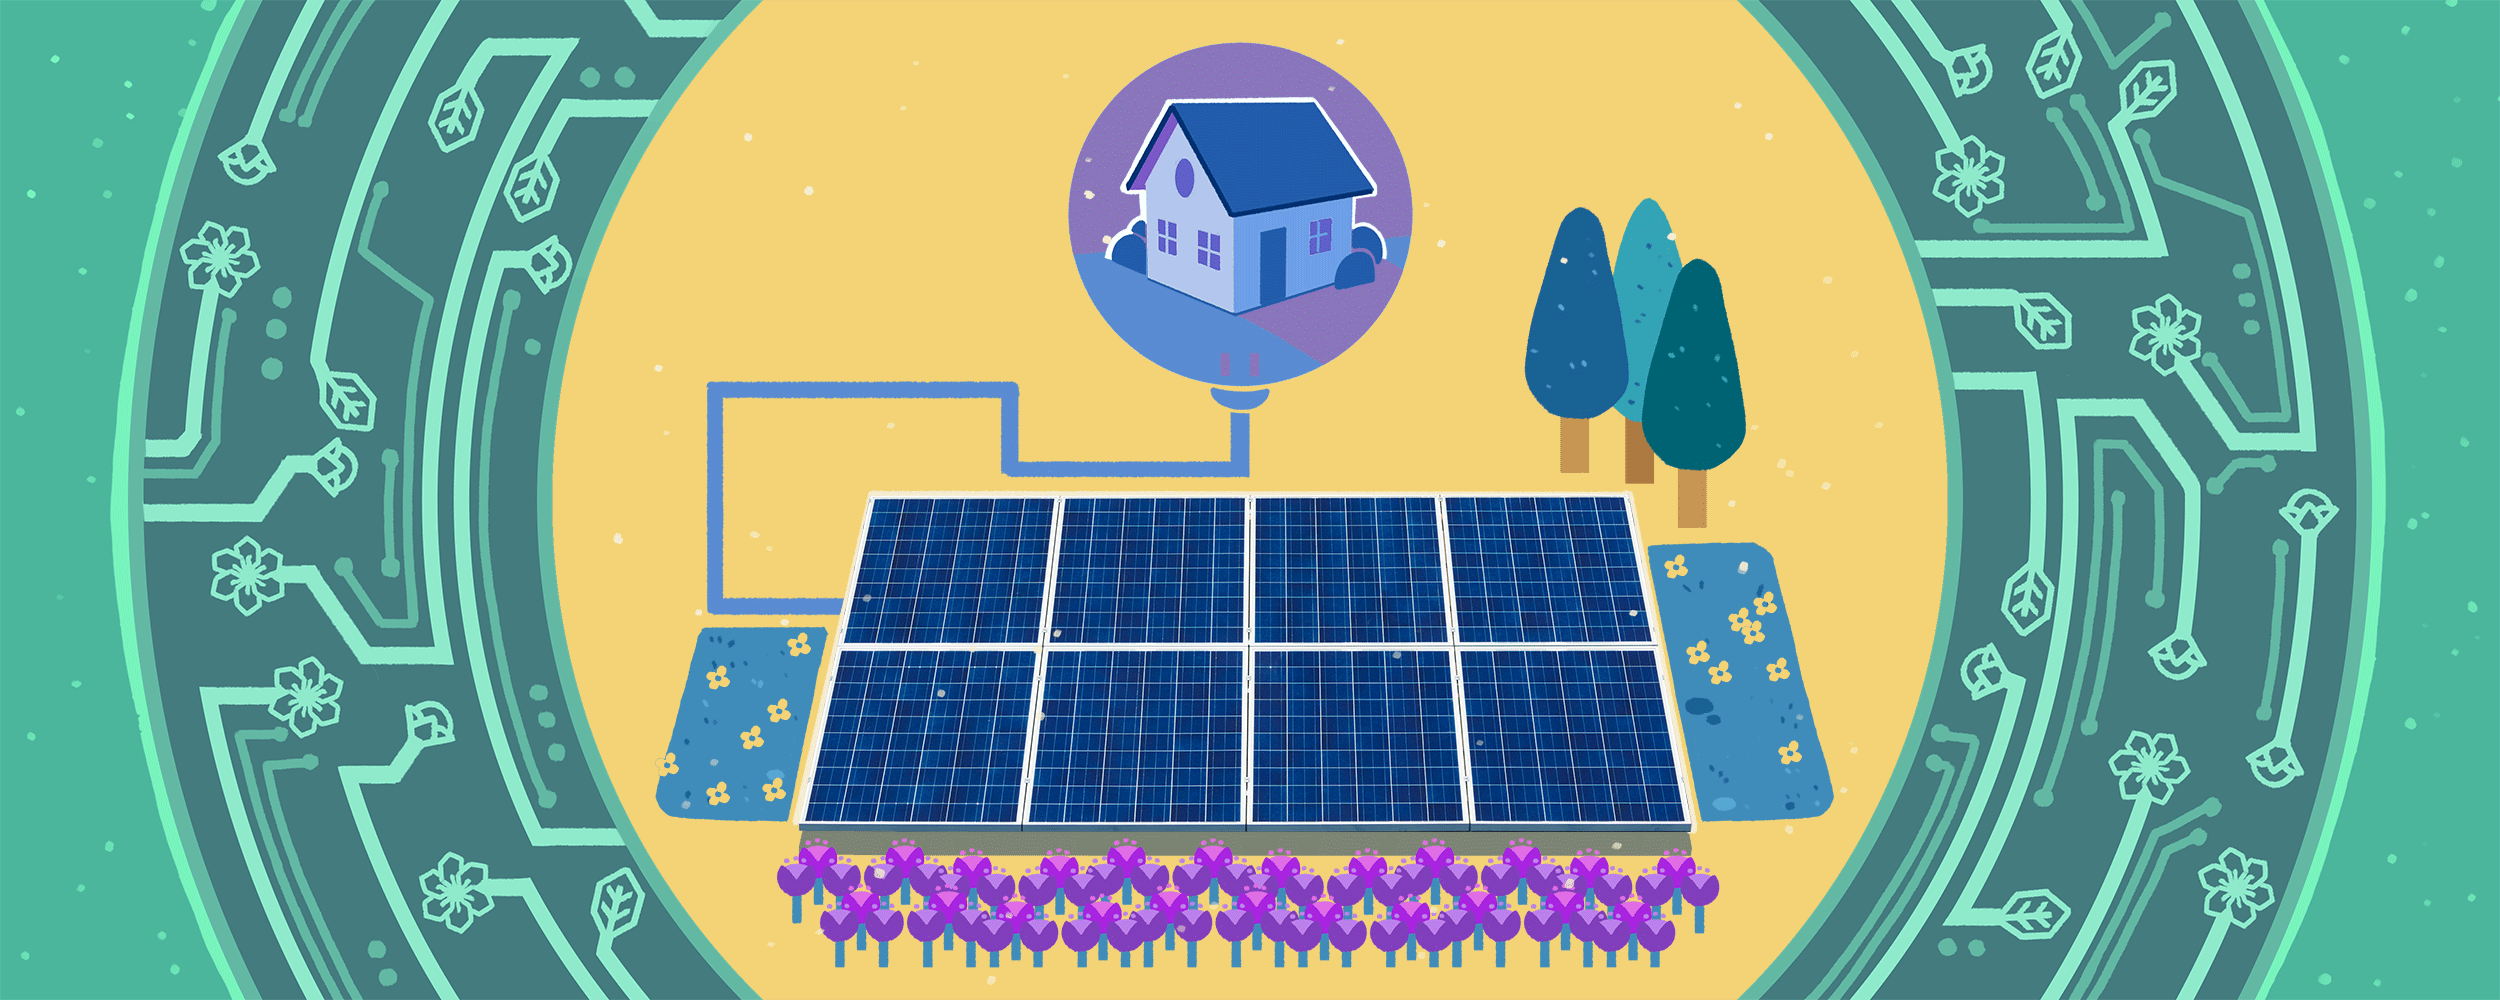 示范社区太阳能的插图